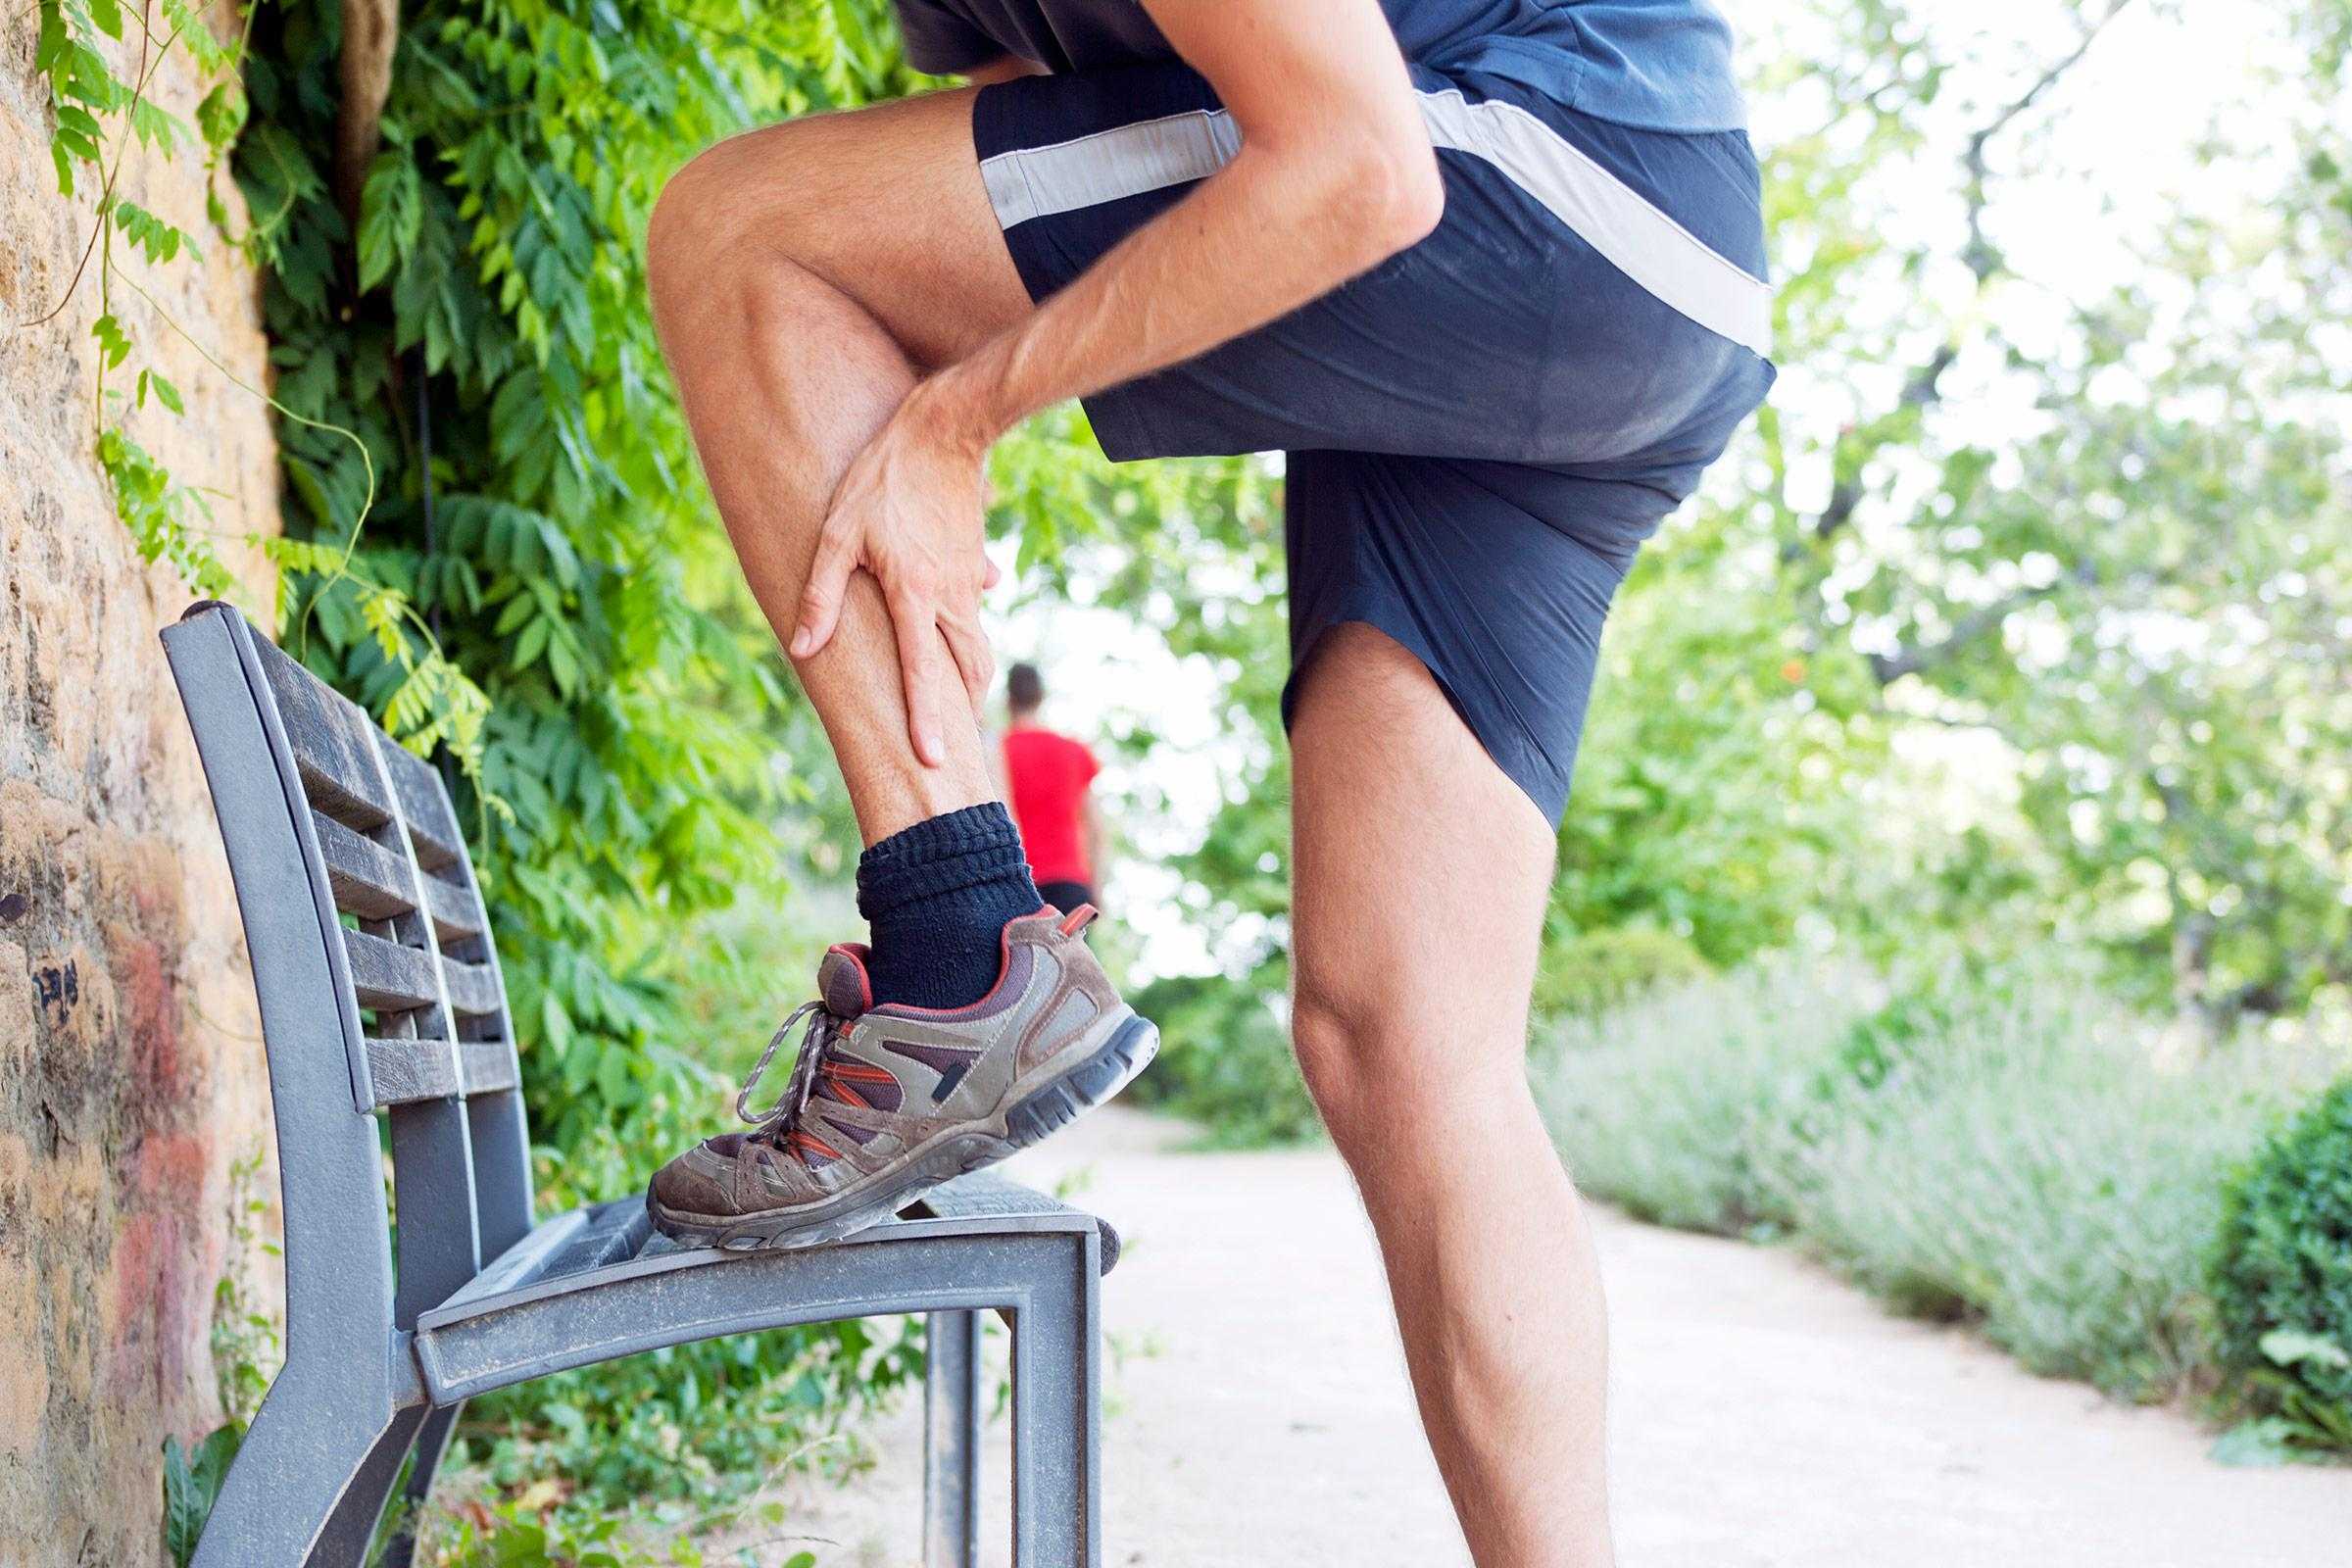 После бега болят колени - почему и что делать